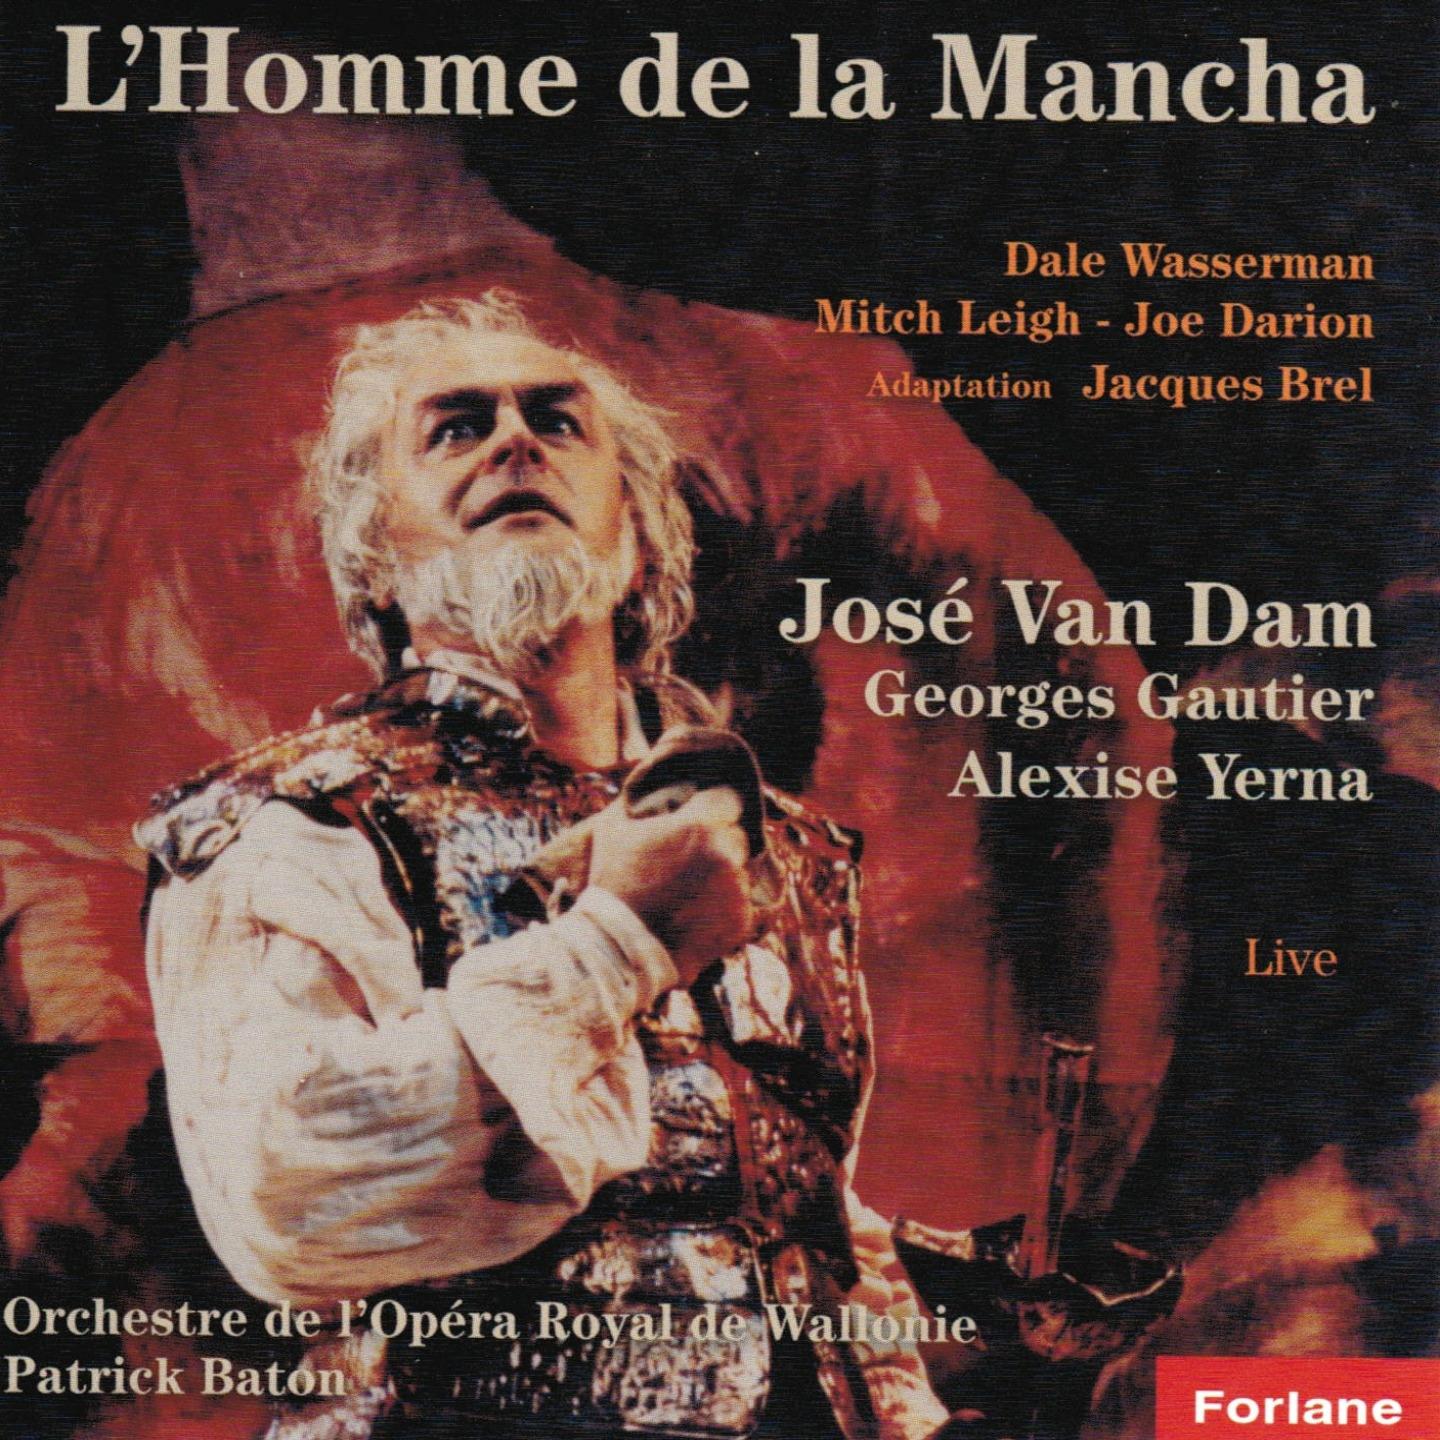 L'homme de la Mancha - Adaptation Jacques Brel (Live)